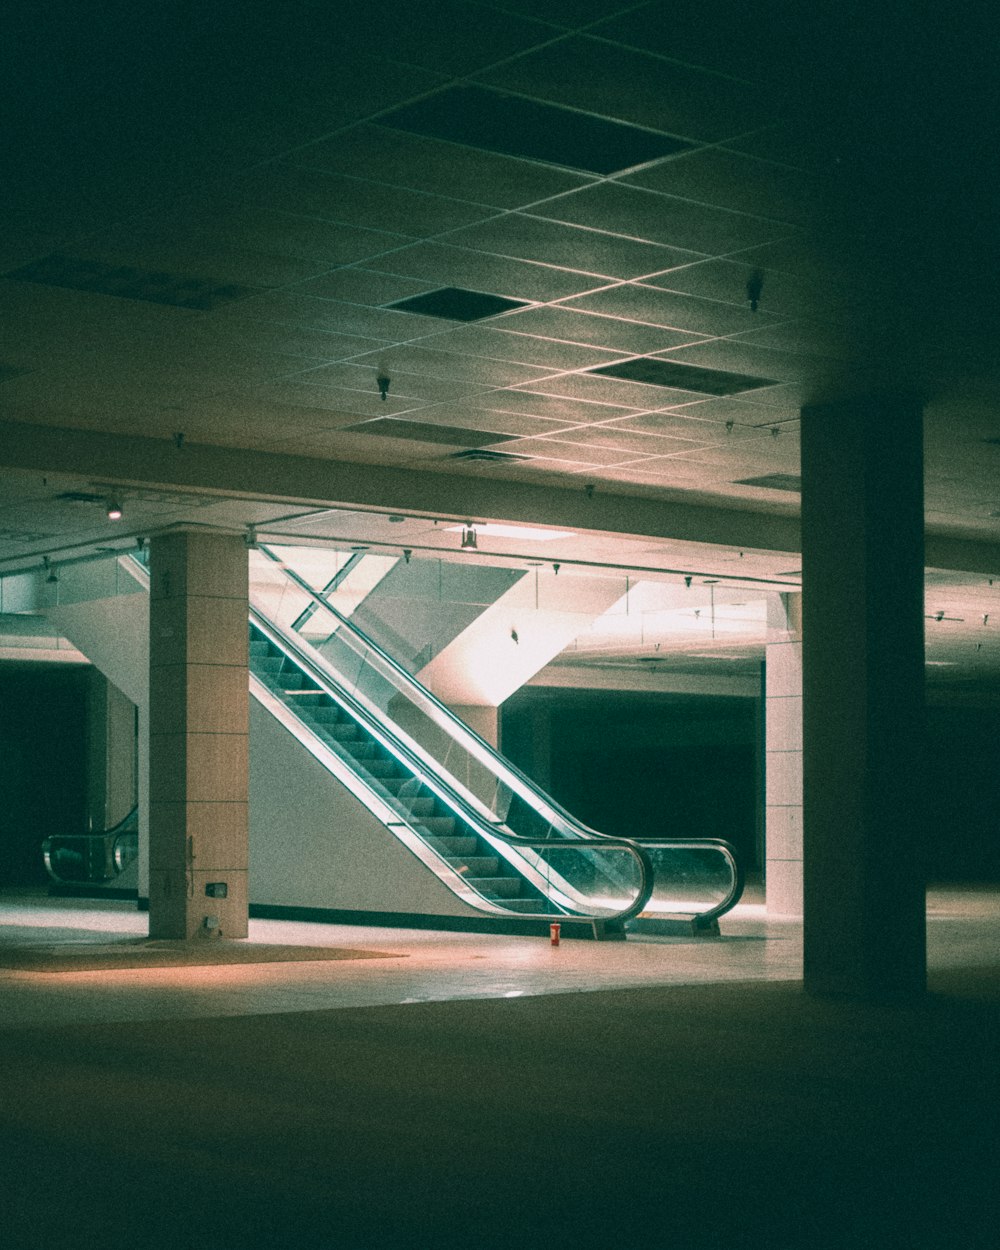 an empty parking garage with an escalator